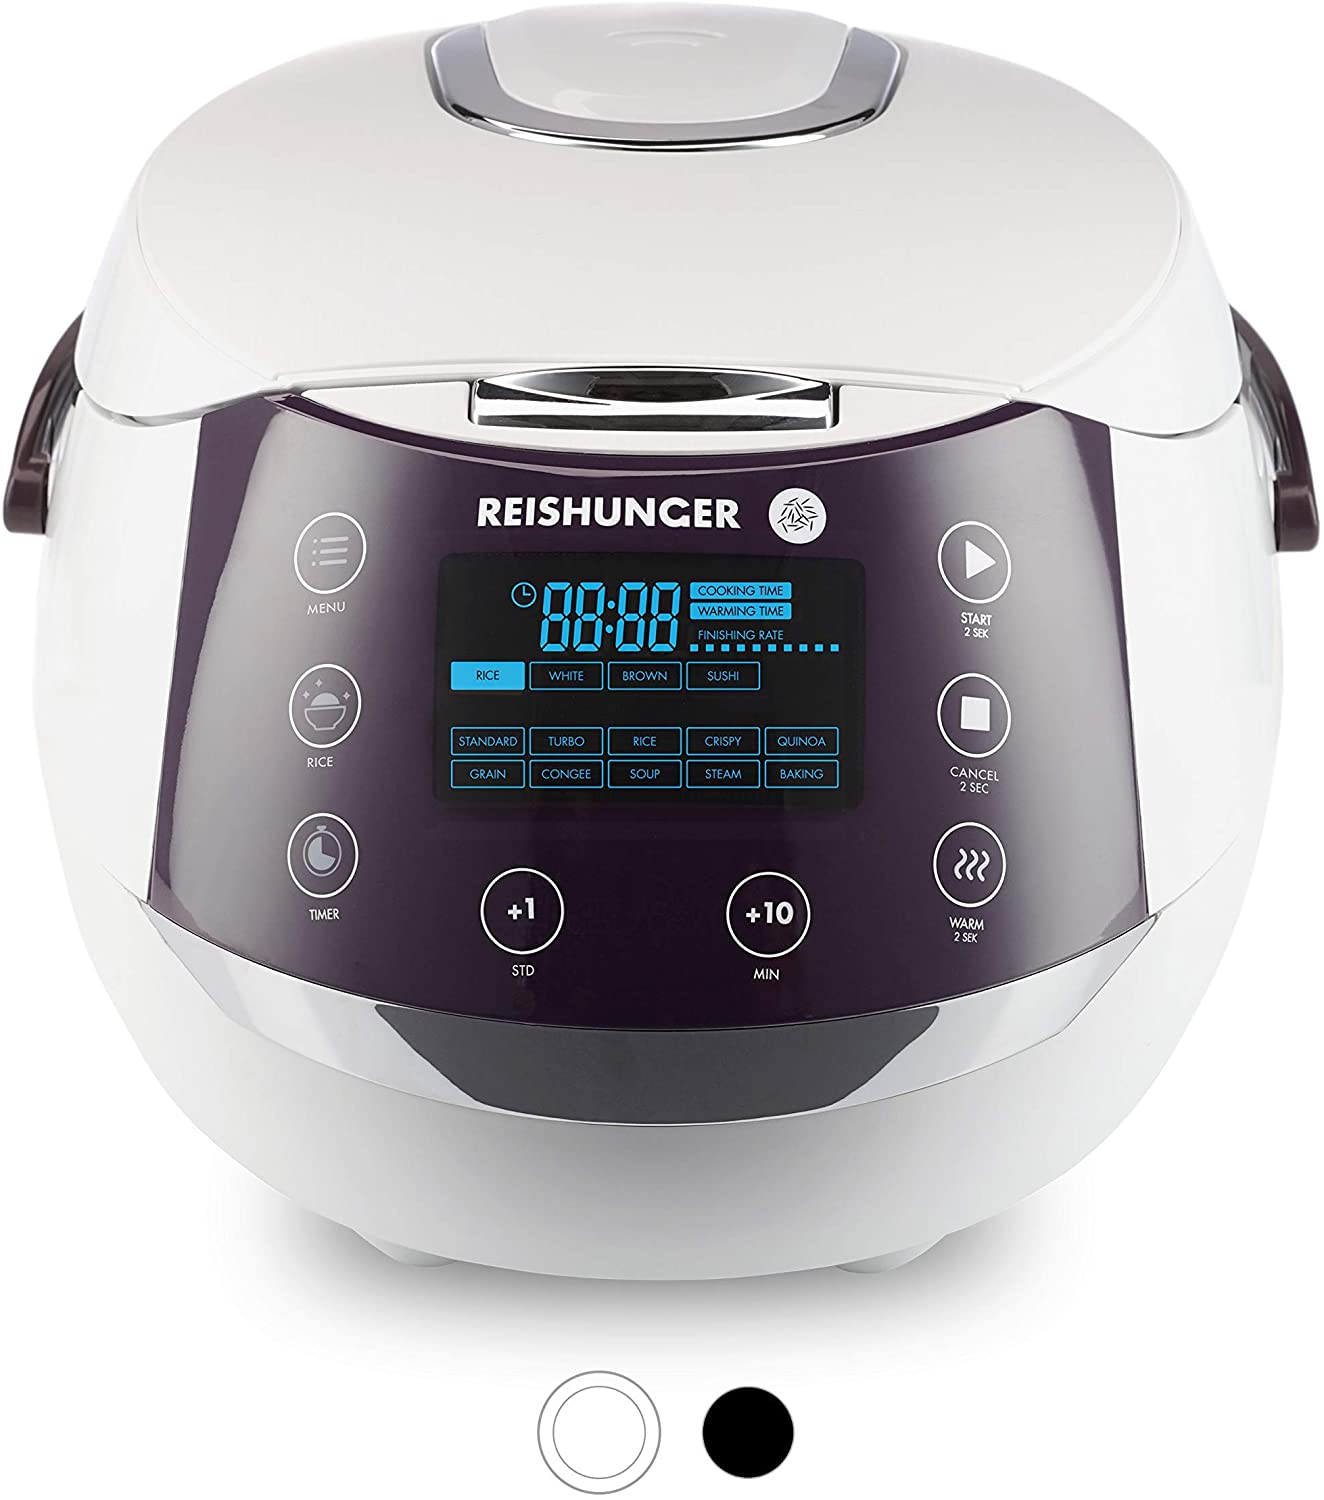 Reishunger : autocuiseur riz multifonction et multi-cuiseur vapeur